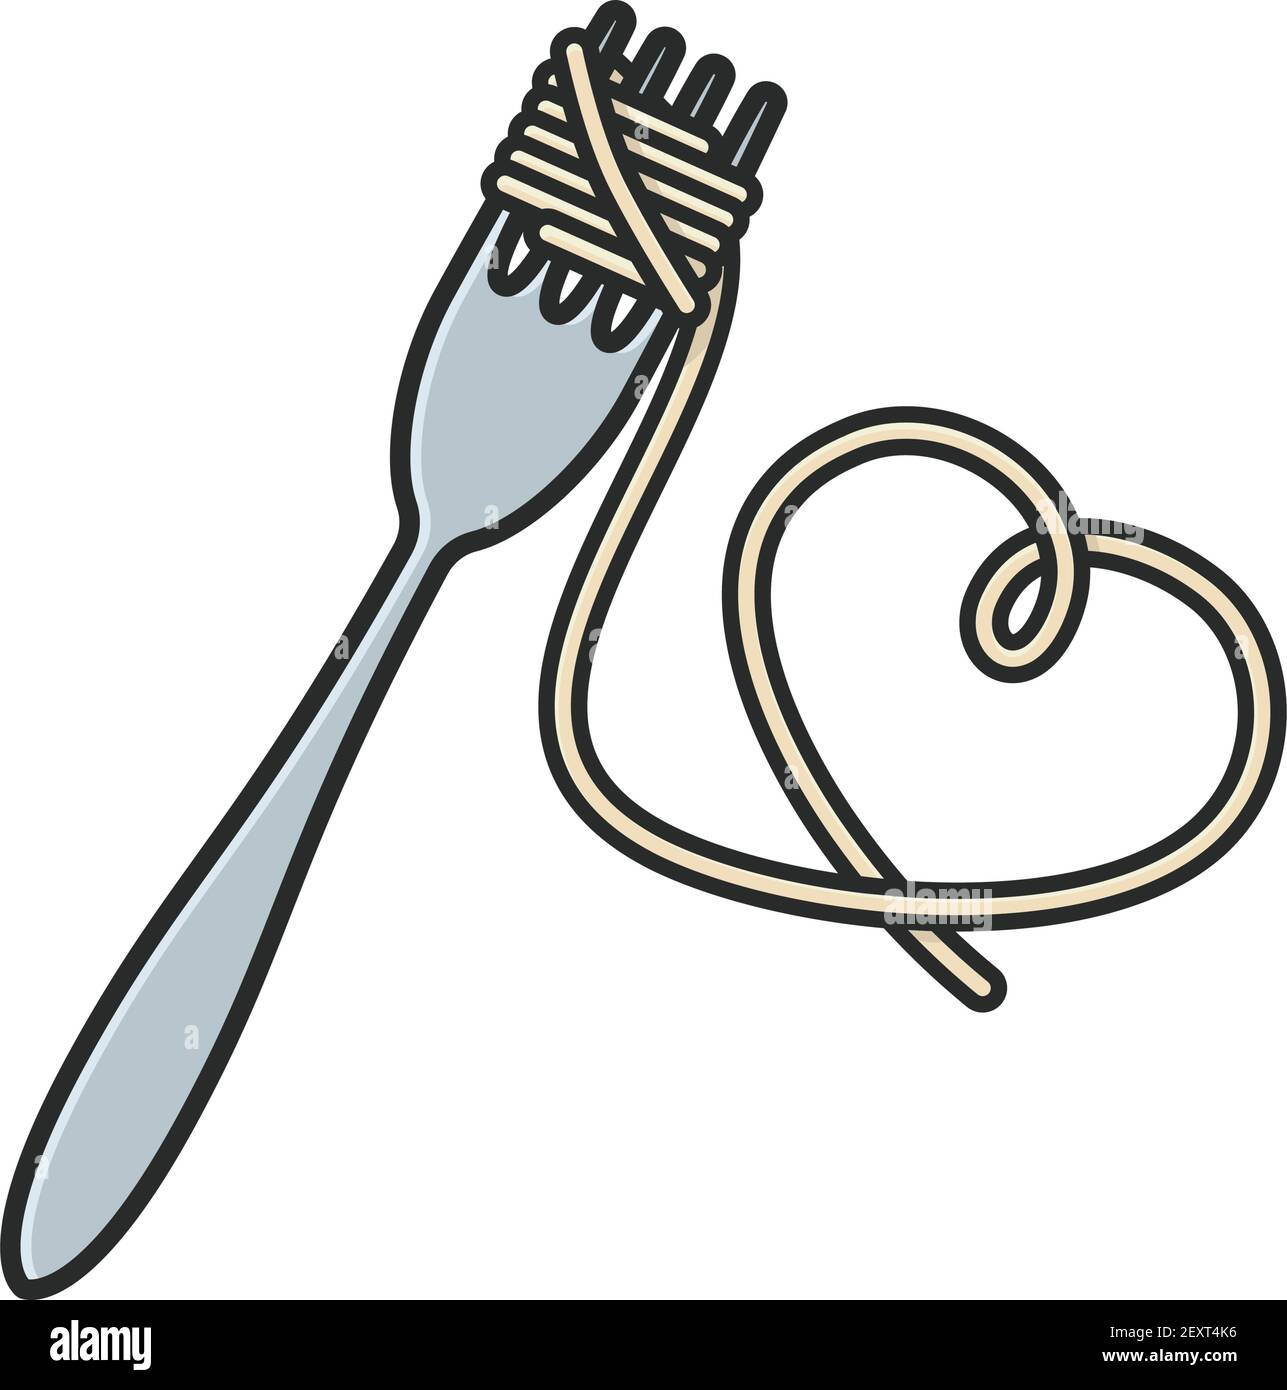 Pâtes spaghetti enveloppées autour de la fourchette et suspendues en forme de coeur Illustration vectorielle à l'occasion de la Journée nationale des pâtes le 17 octobre Illustration de Vecteur